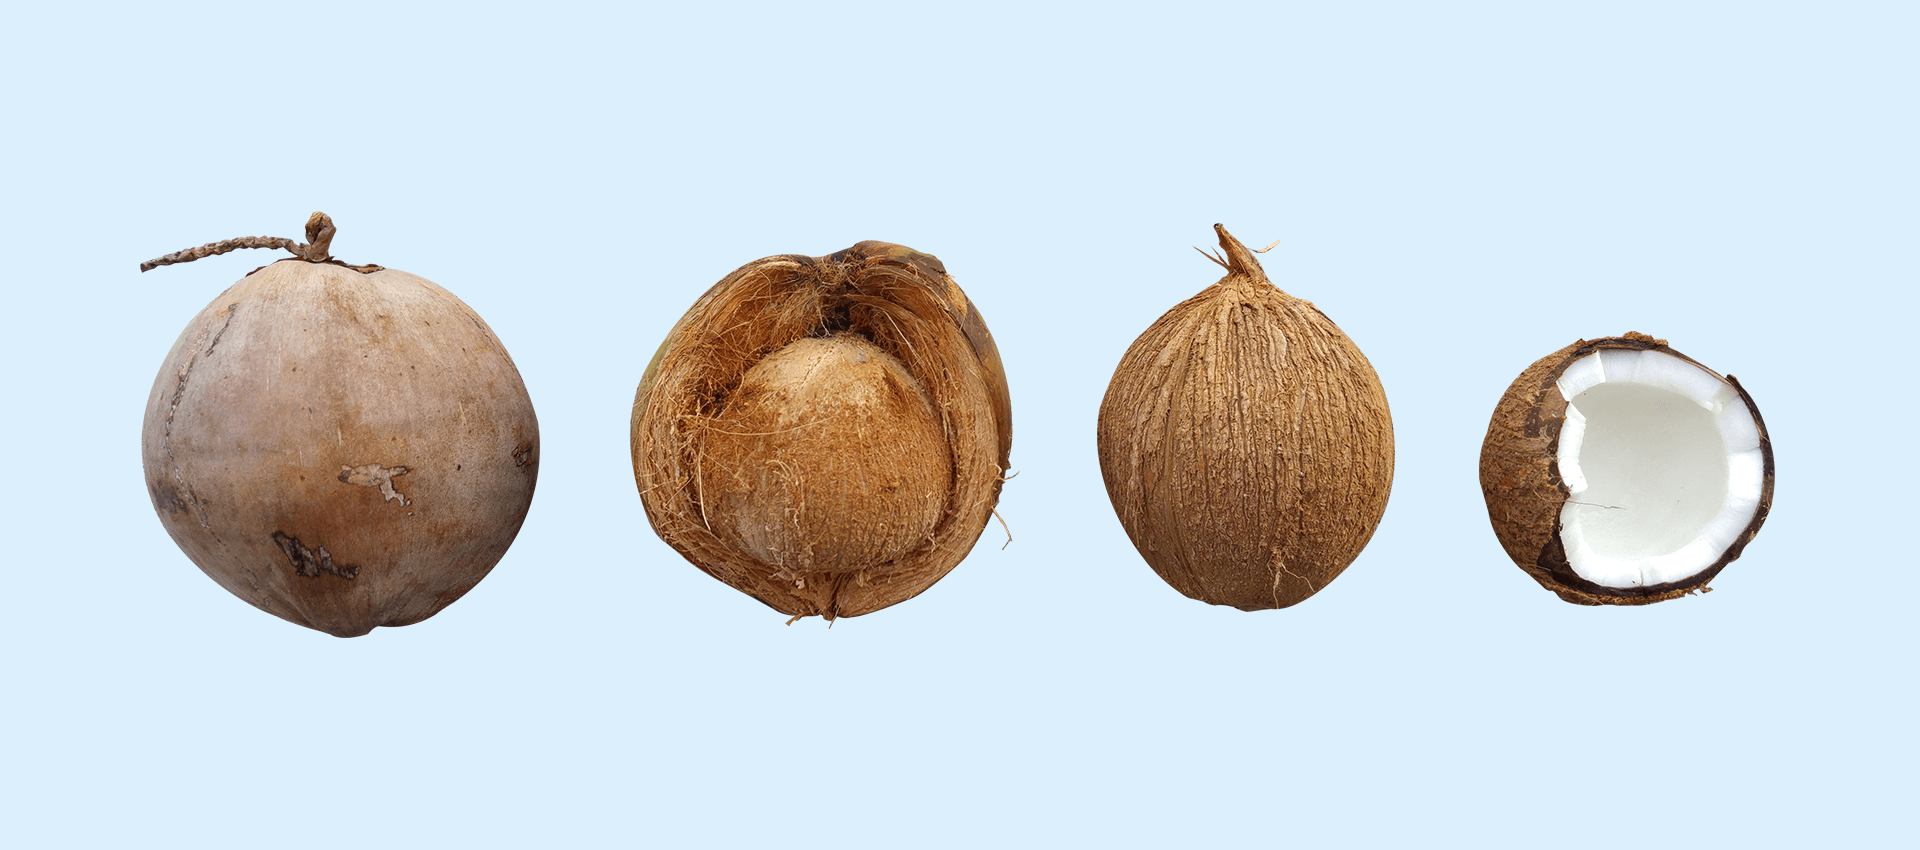 35 kokosolie toepassingen voor je huid, haar, nagels & tanden